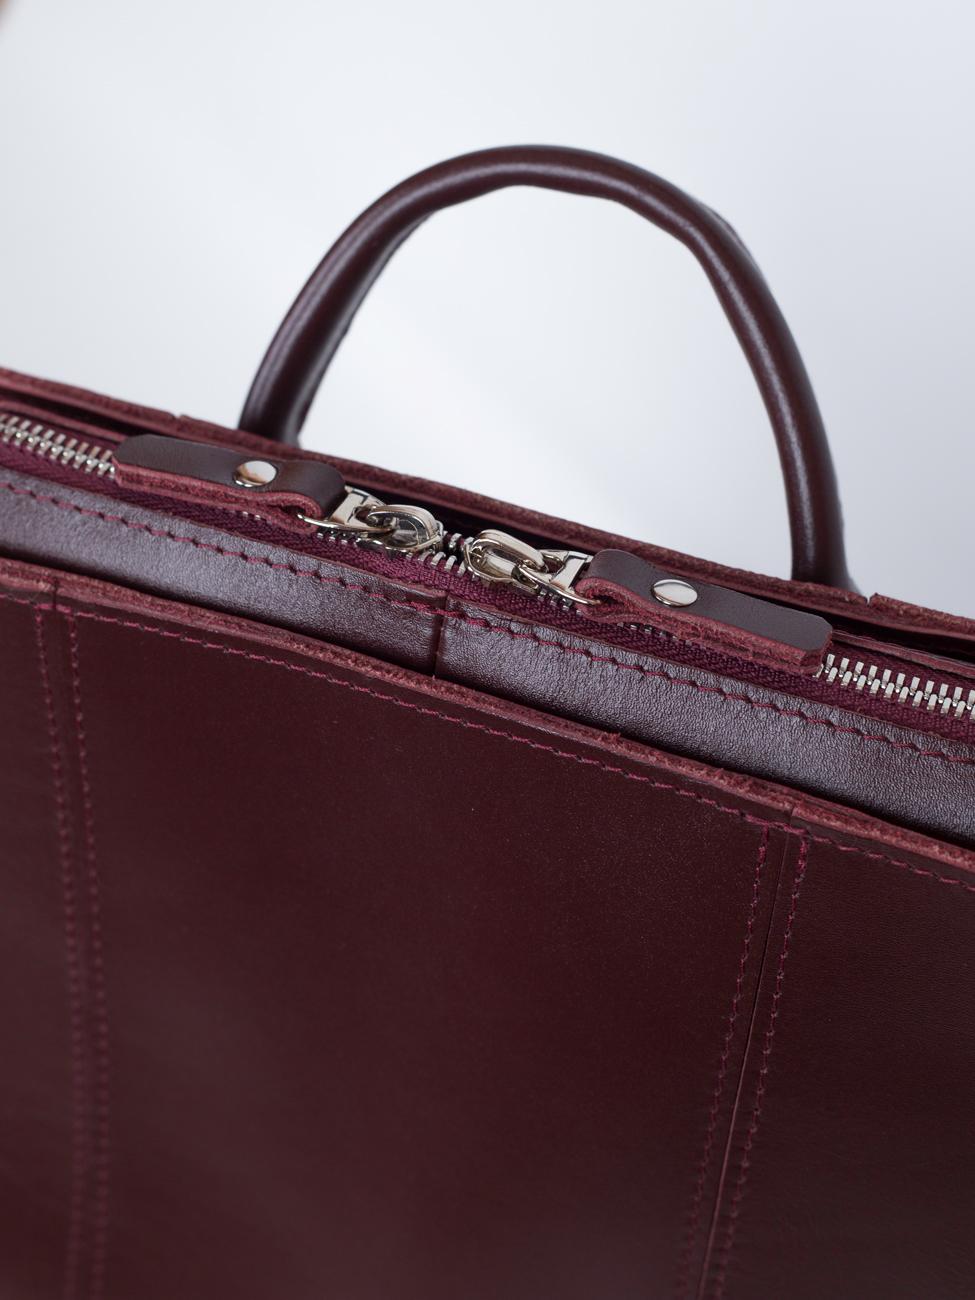 Женский рюкзак из натуральной кожи бордовый B014 burgundy